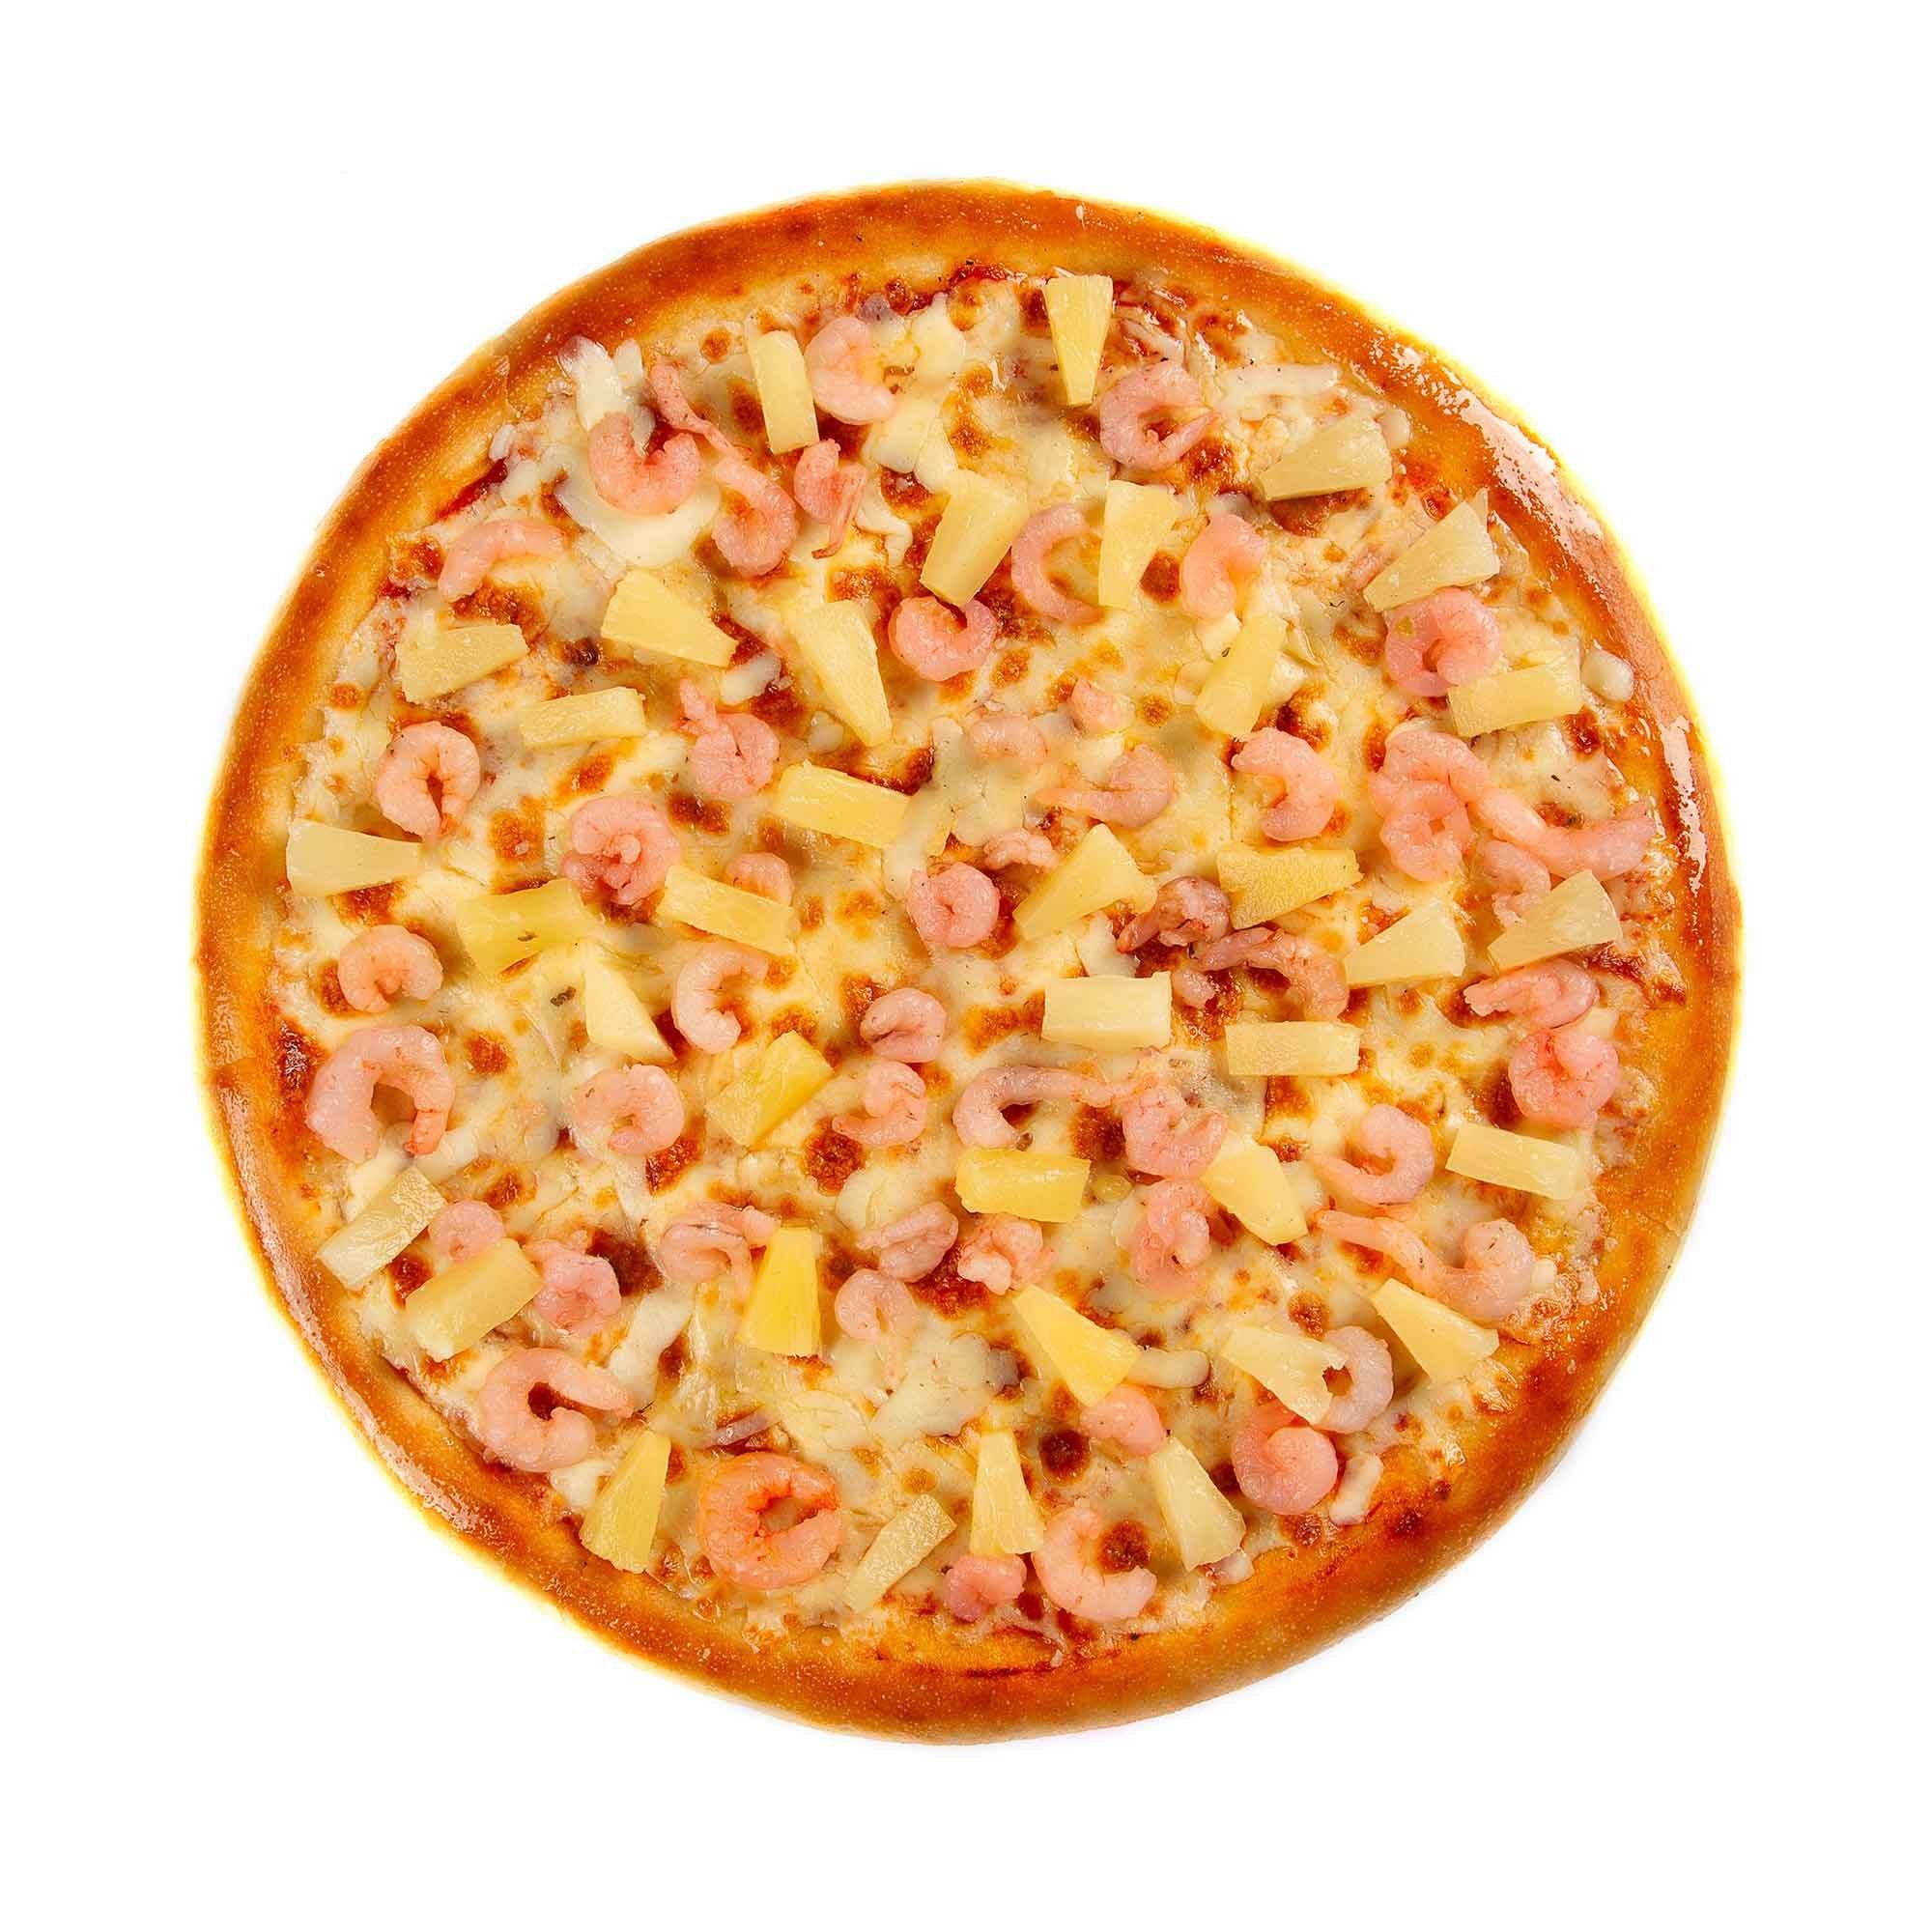 что входит в состав пиццы с ананасами фото 55